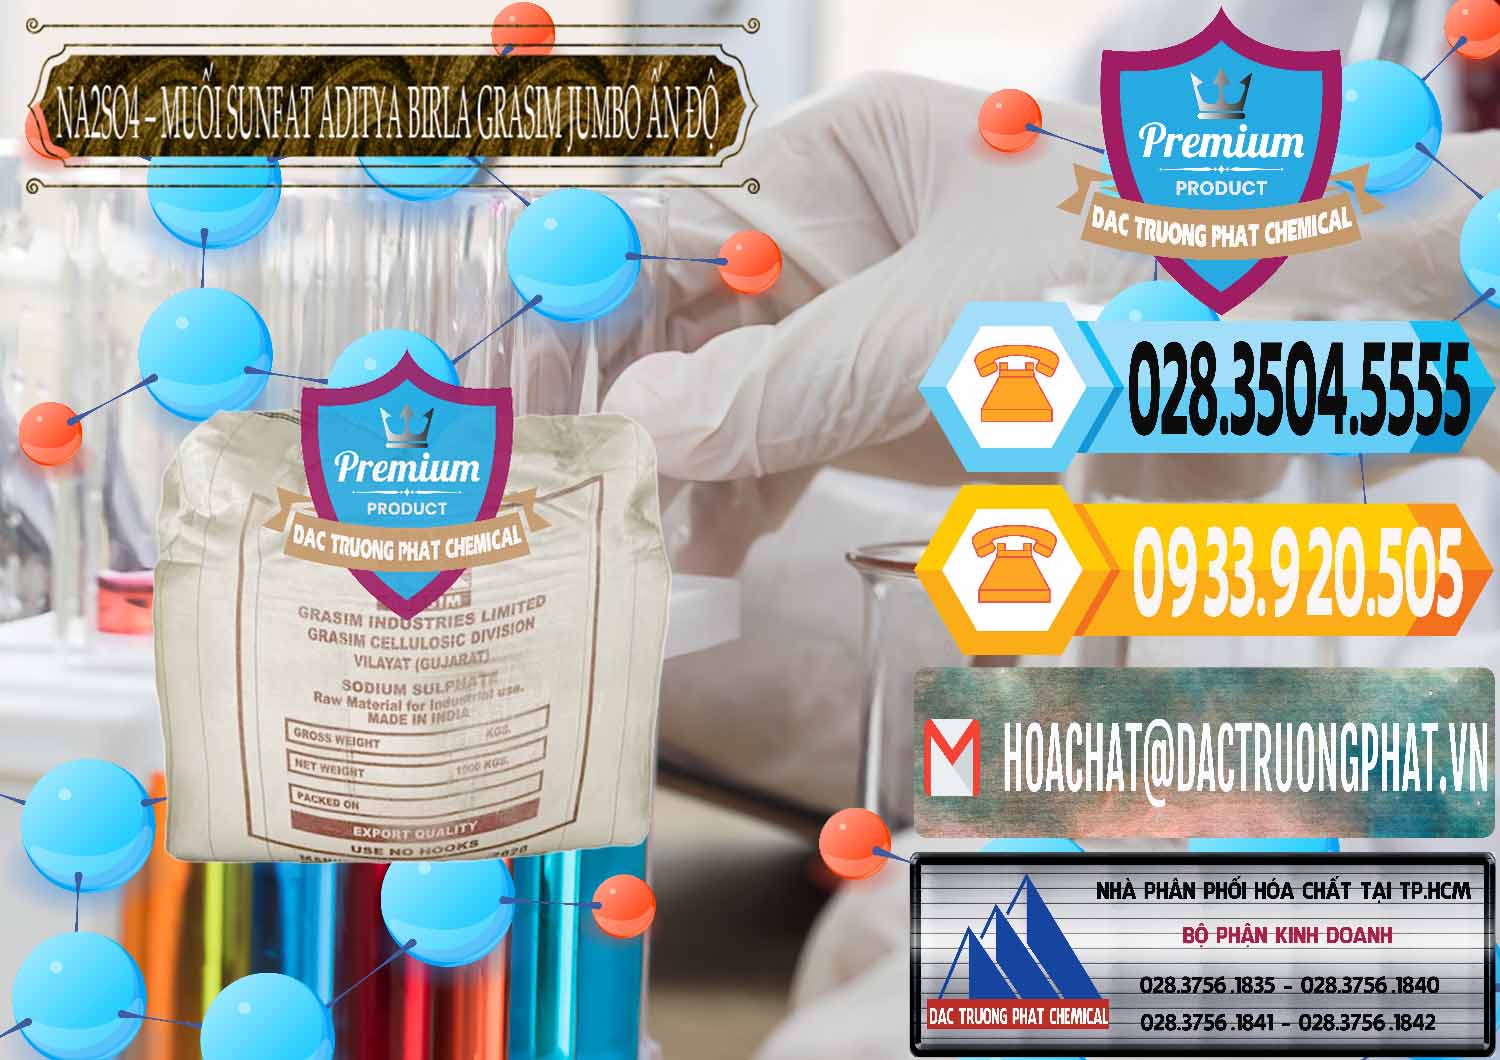 Đơn vị chuyên bán - cung cấp Sodium Sulphate - Muối Sunfat Na2SO4 Jumbo Bành Aditya Birla Grasim Ấn Độ India - 0357 - Cty chuyên cung cấp - bán hóa chất tại TP.HCM - hoachattayrua.net